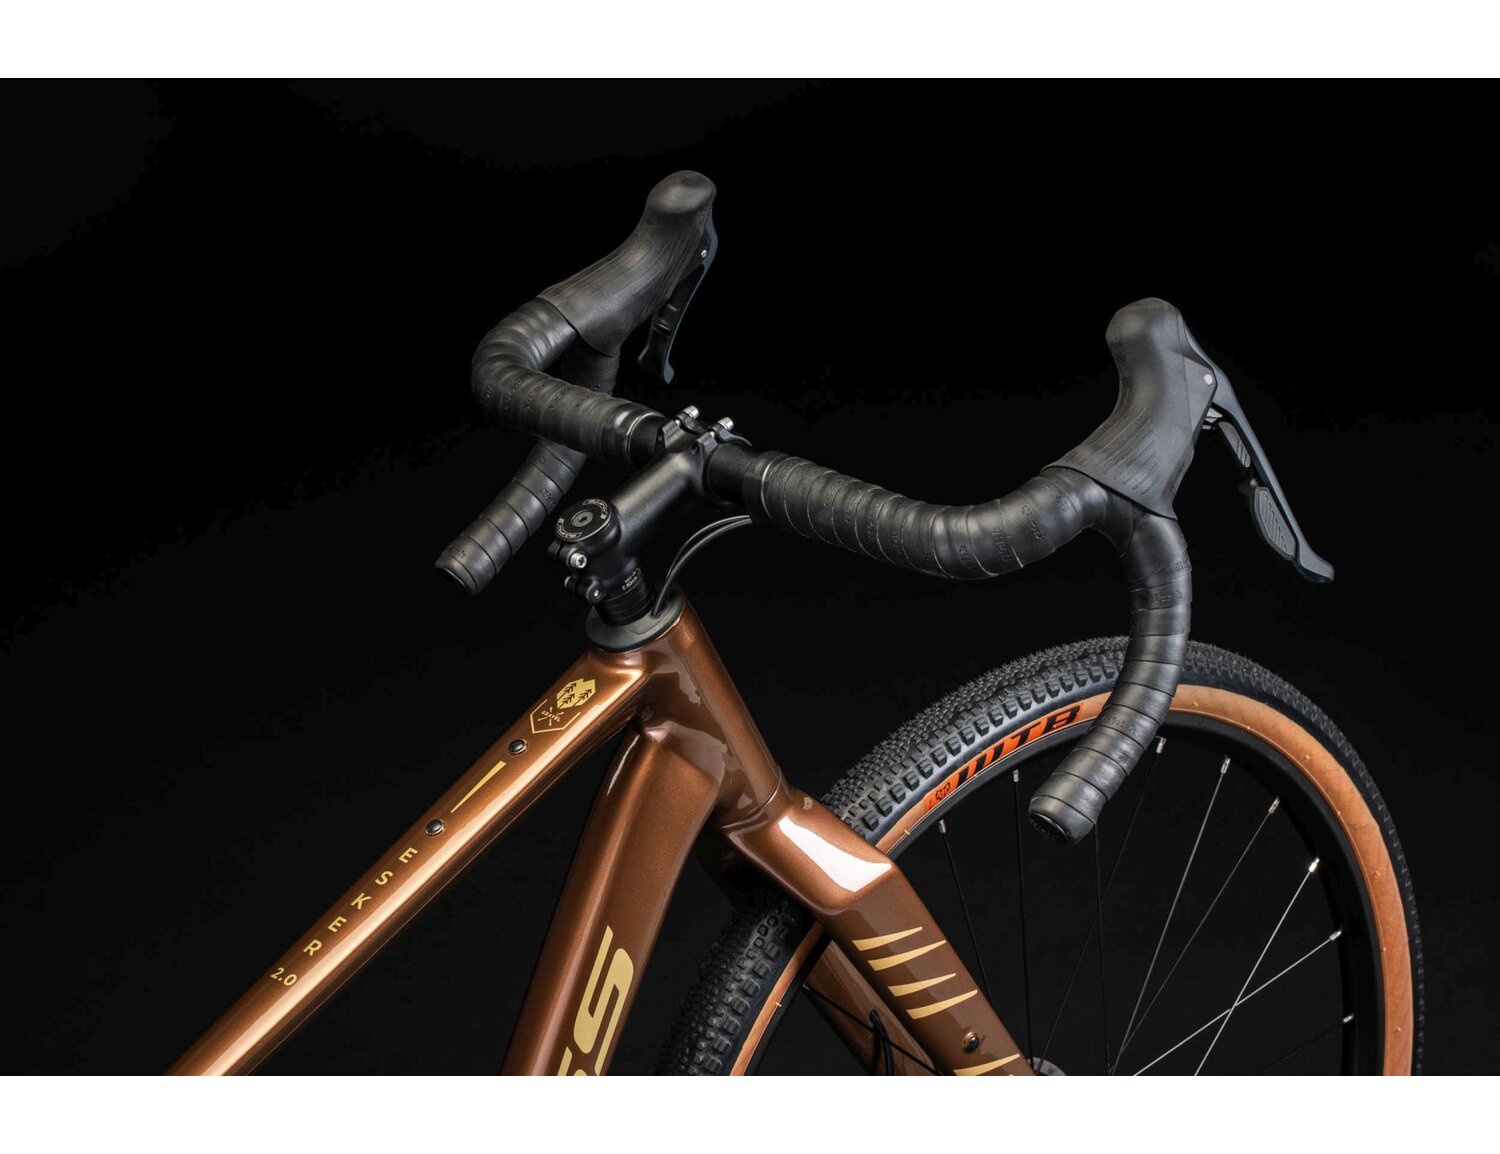  Sztywny carbonowy widelec oraz opony WTB Resolute o szerokośći 42mm w rowerze gravelowym KROSS Esker 2.0 